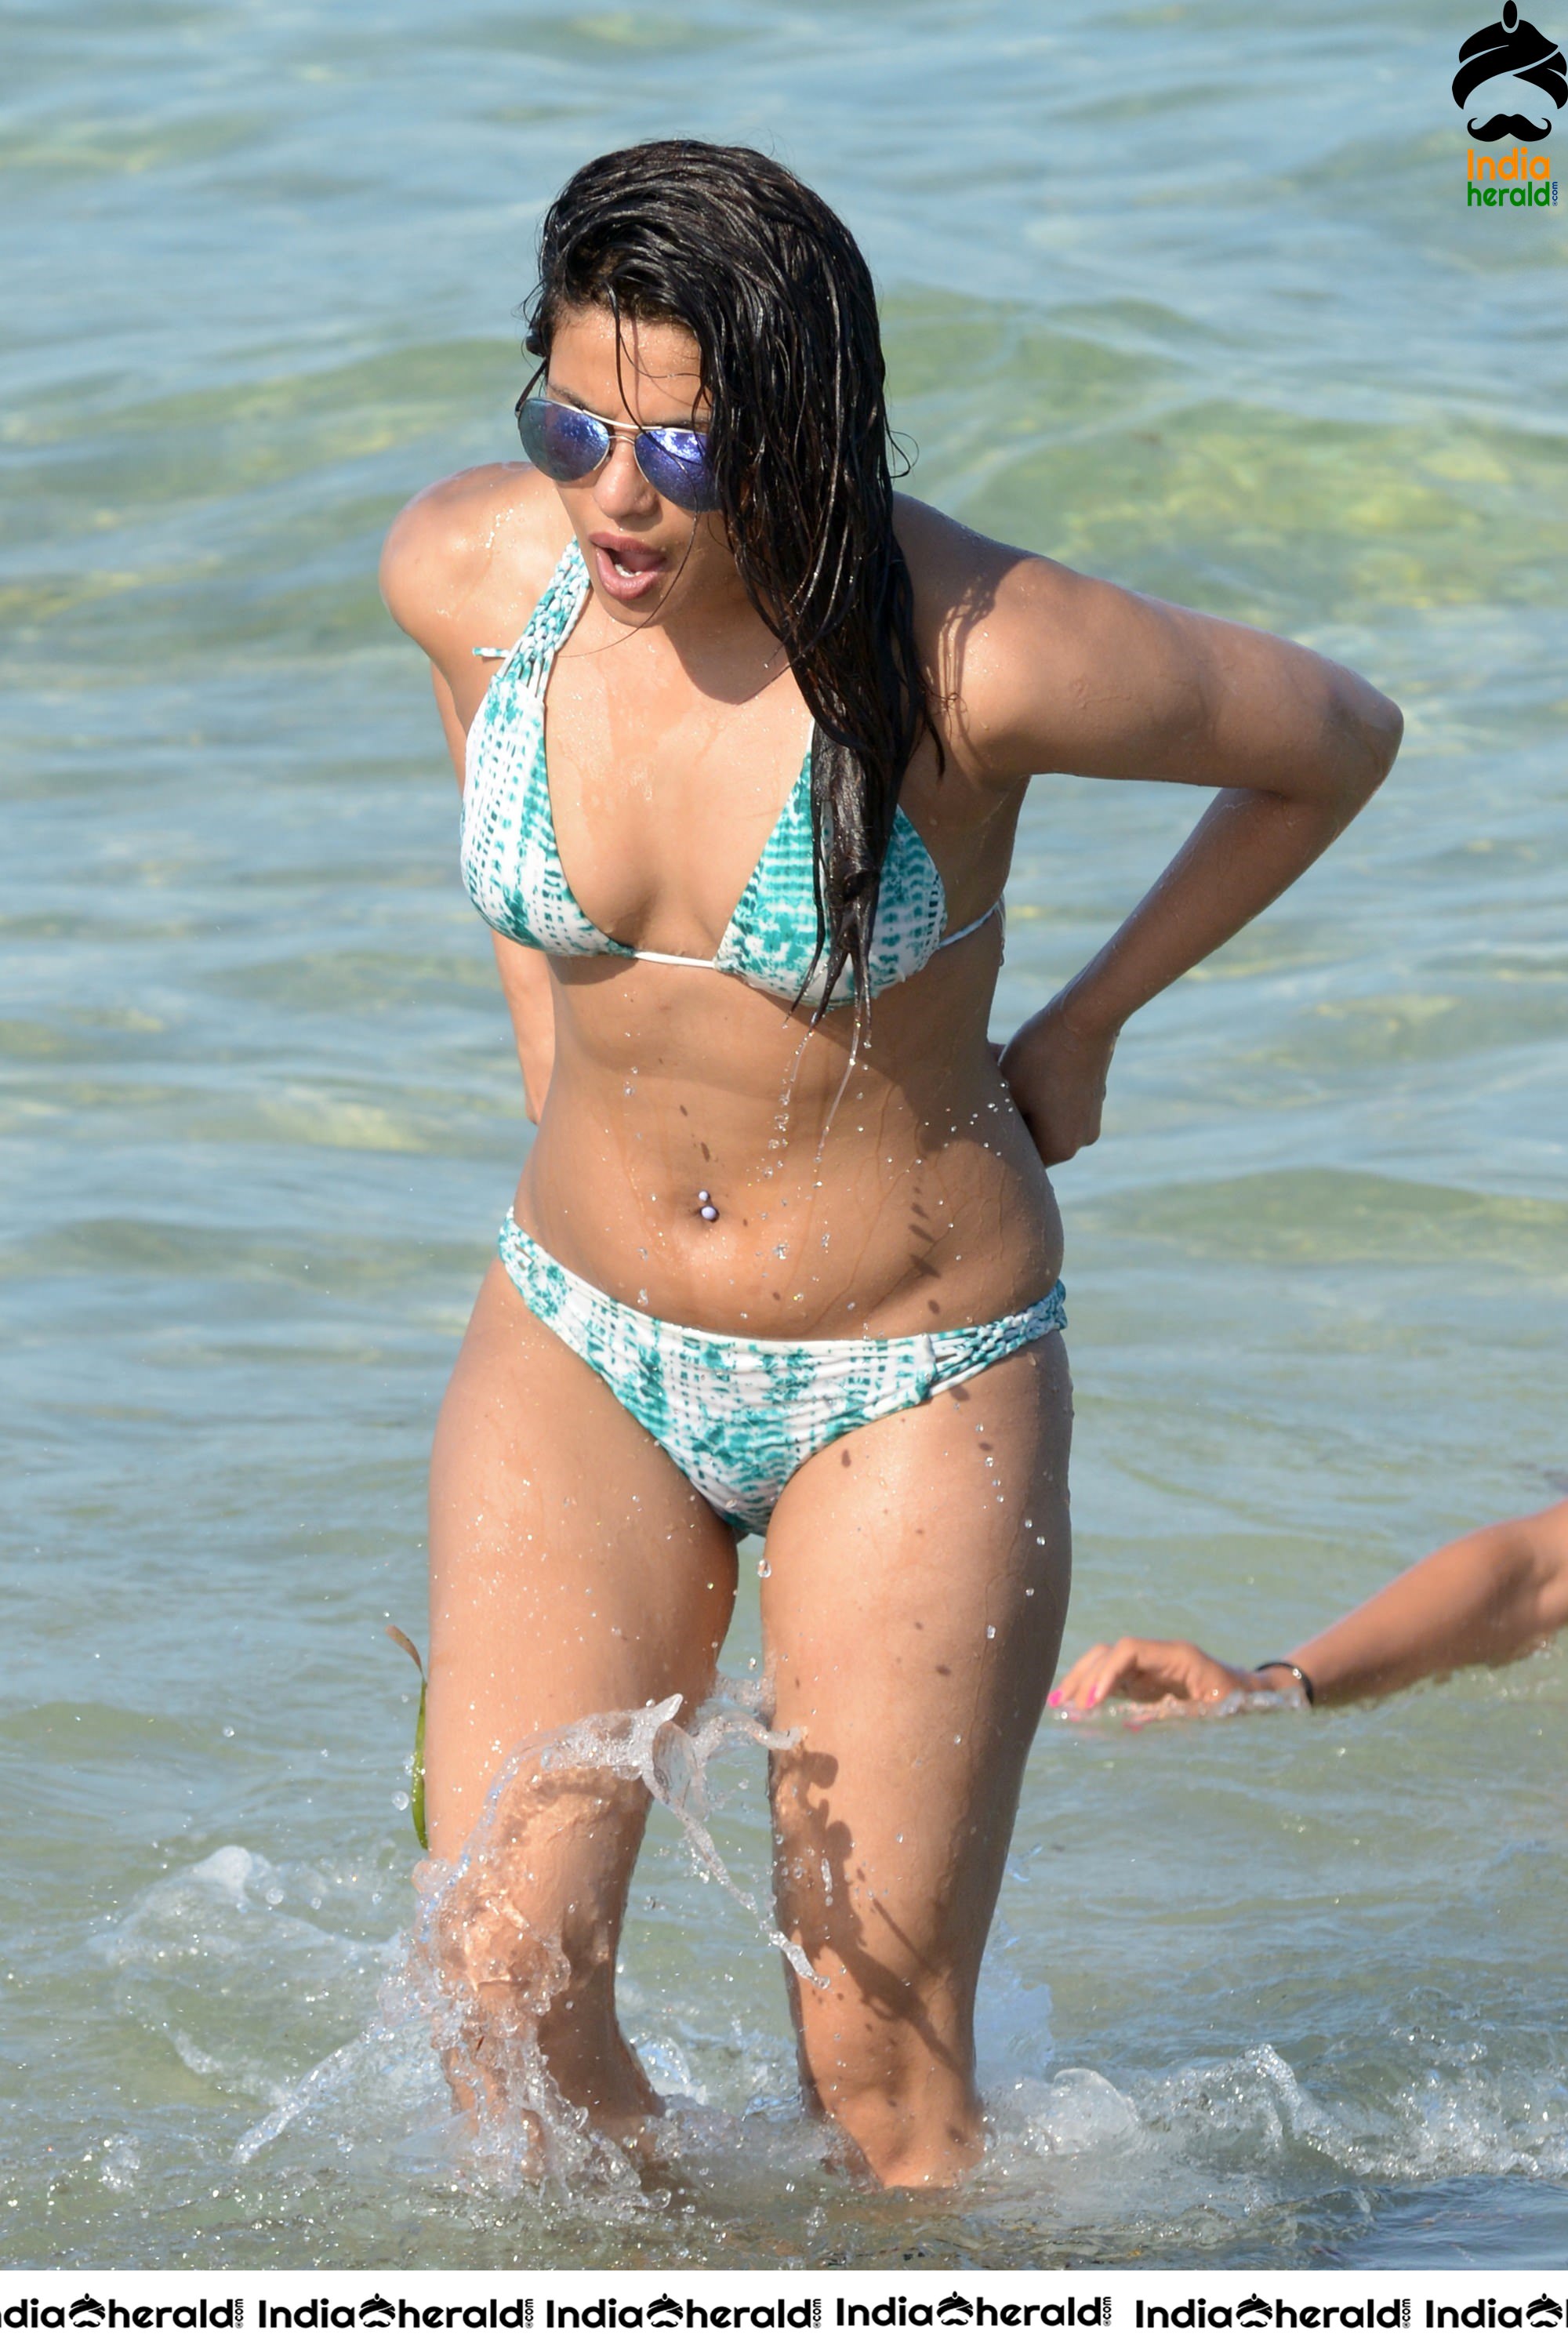 Priyanka Chopra In a bikini at a beach in Miami Set 2